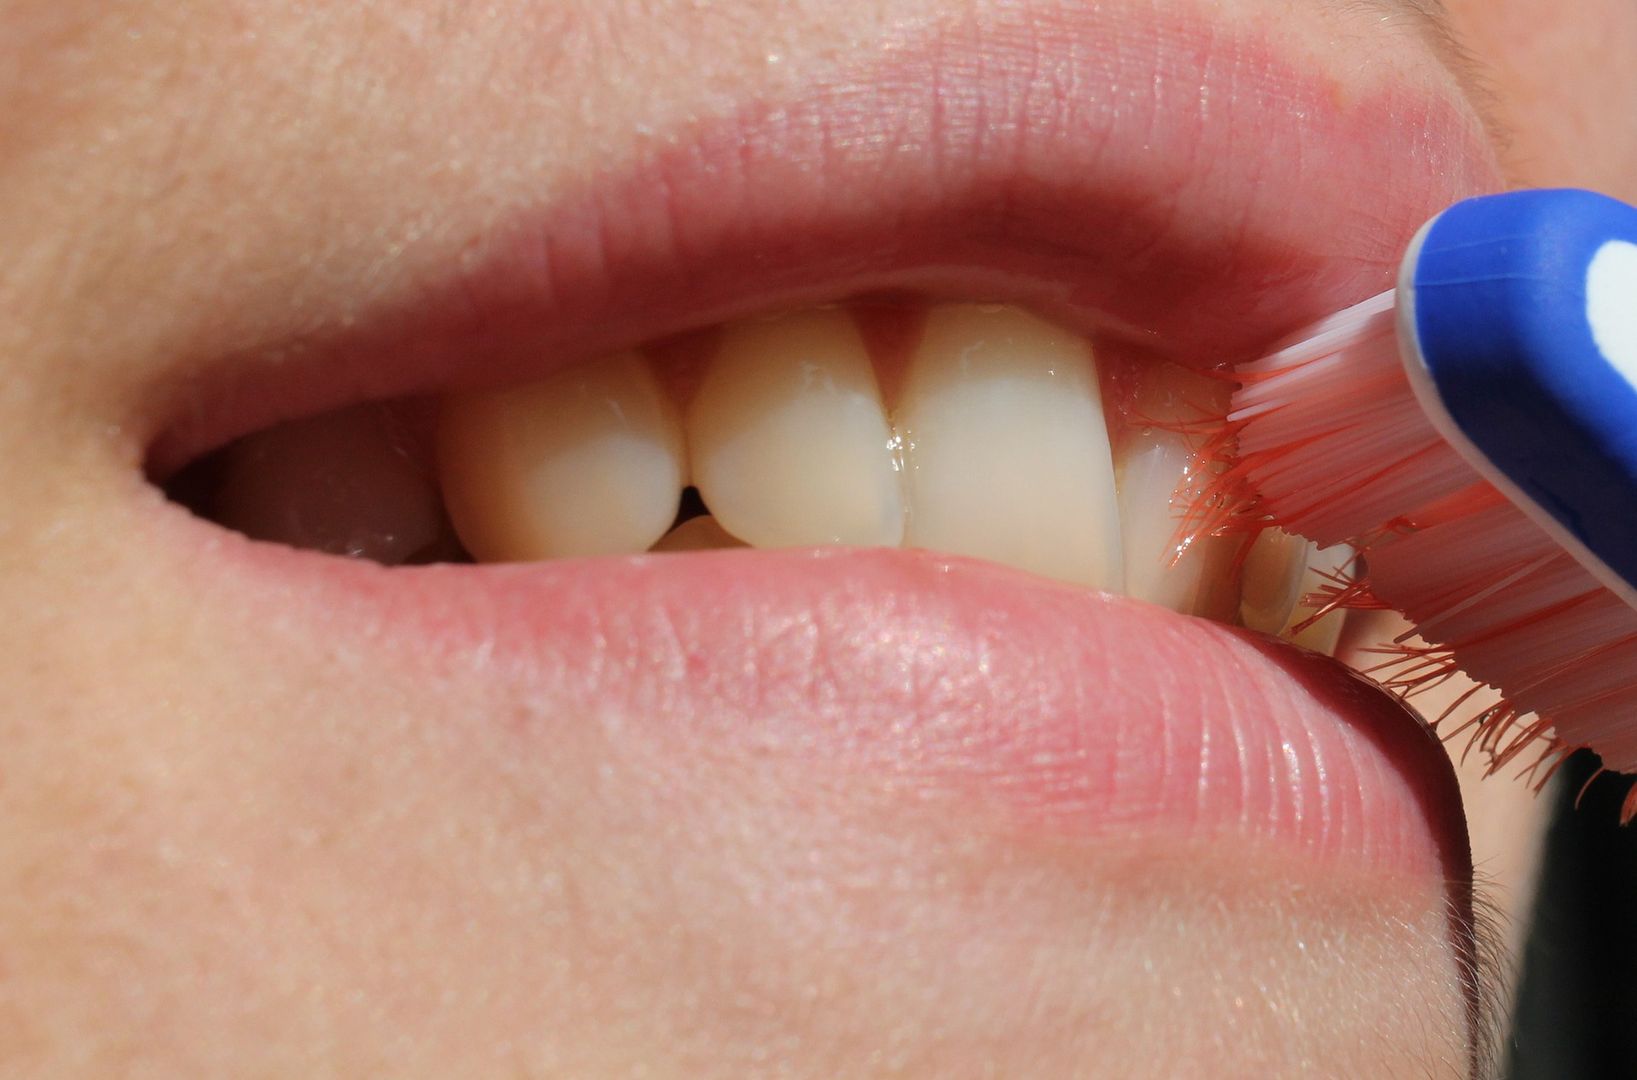 Przesadnie dbając o zęby, możesz nabawić się cukrzycy. Zaskakujące działanie płynów do płukania ust